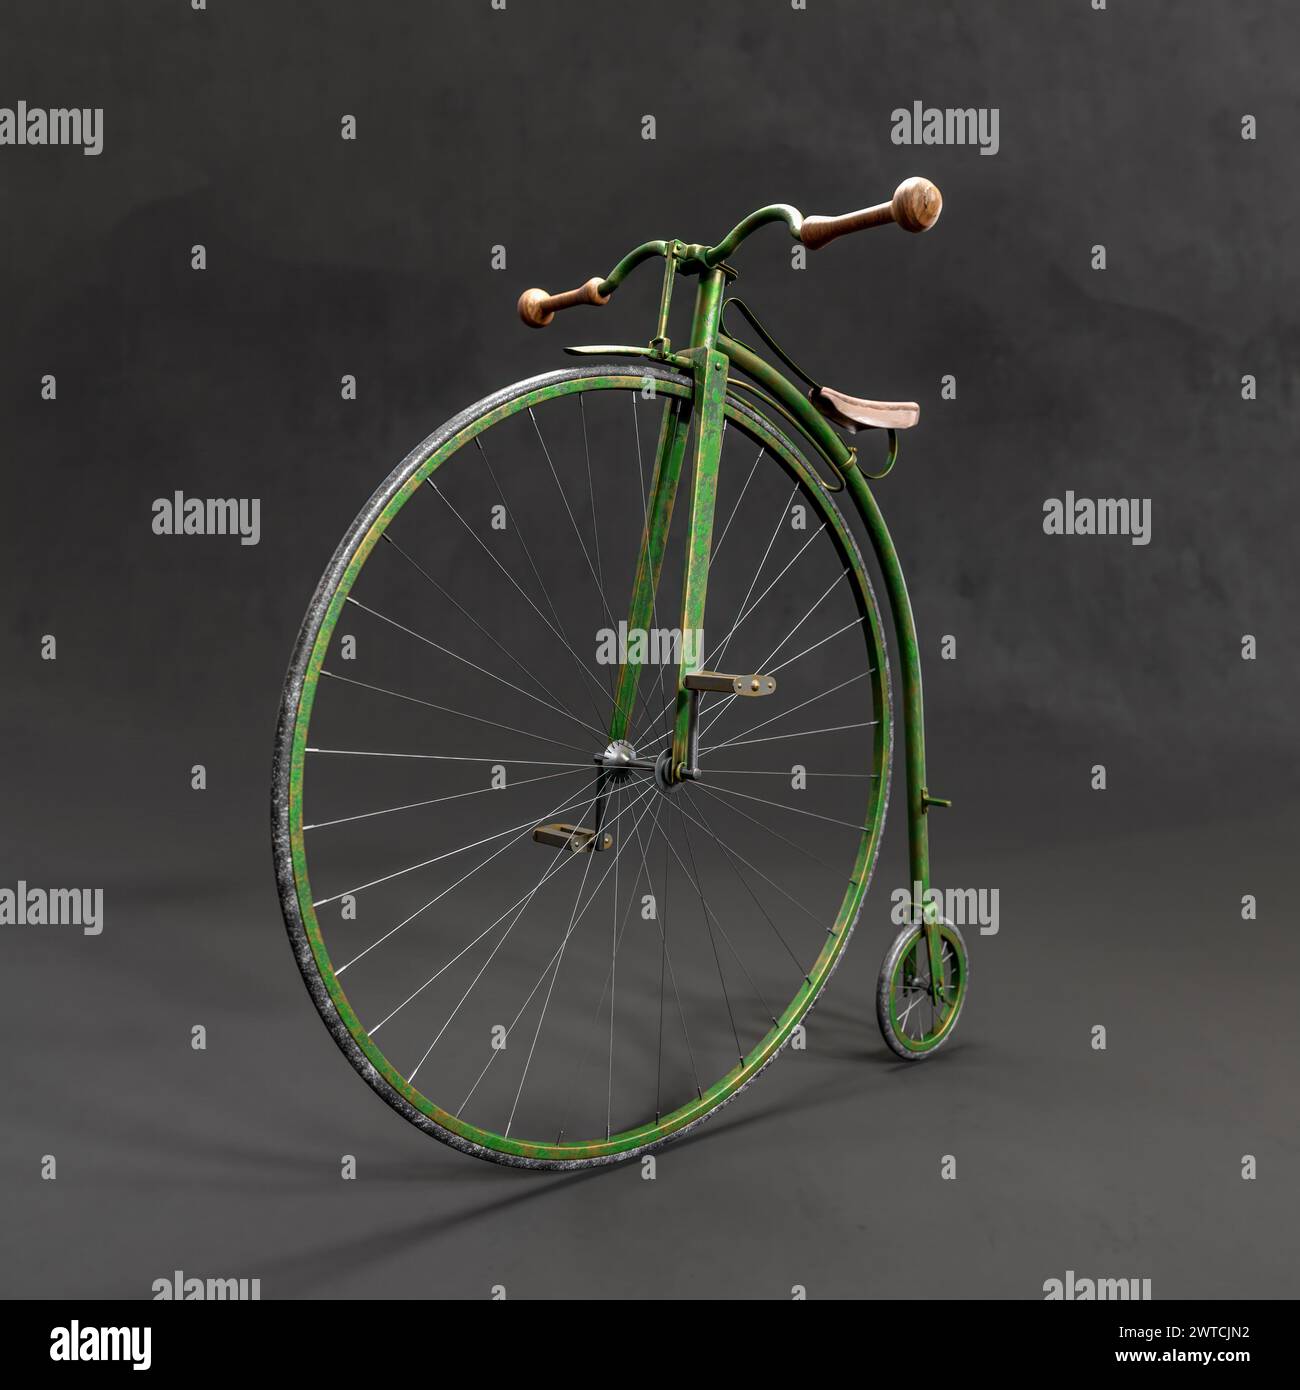 Rendu 3D de vélo rétro Penny-farthing sur fond noir Banque D'Images